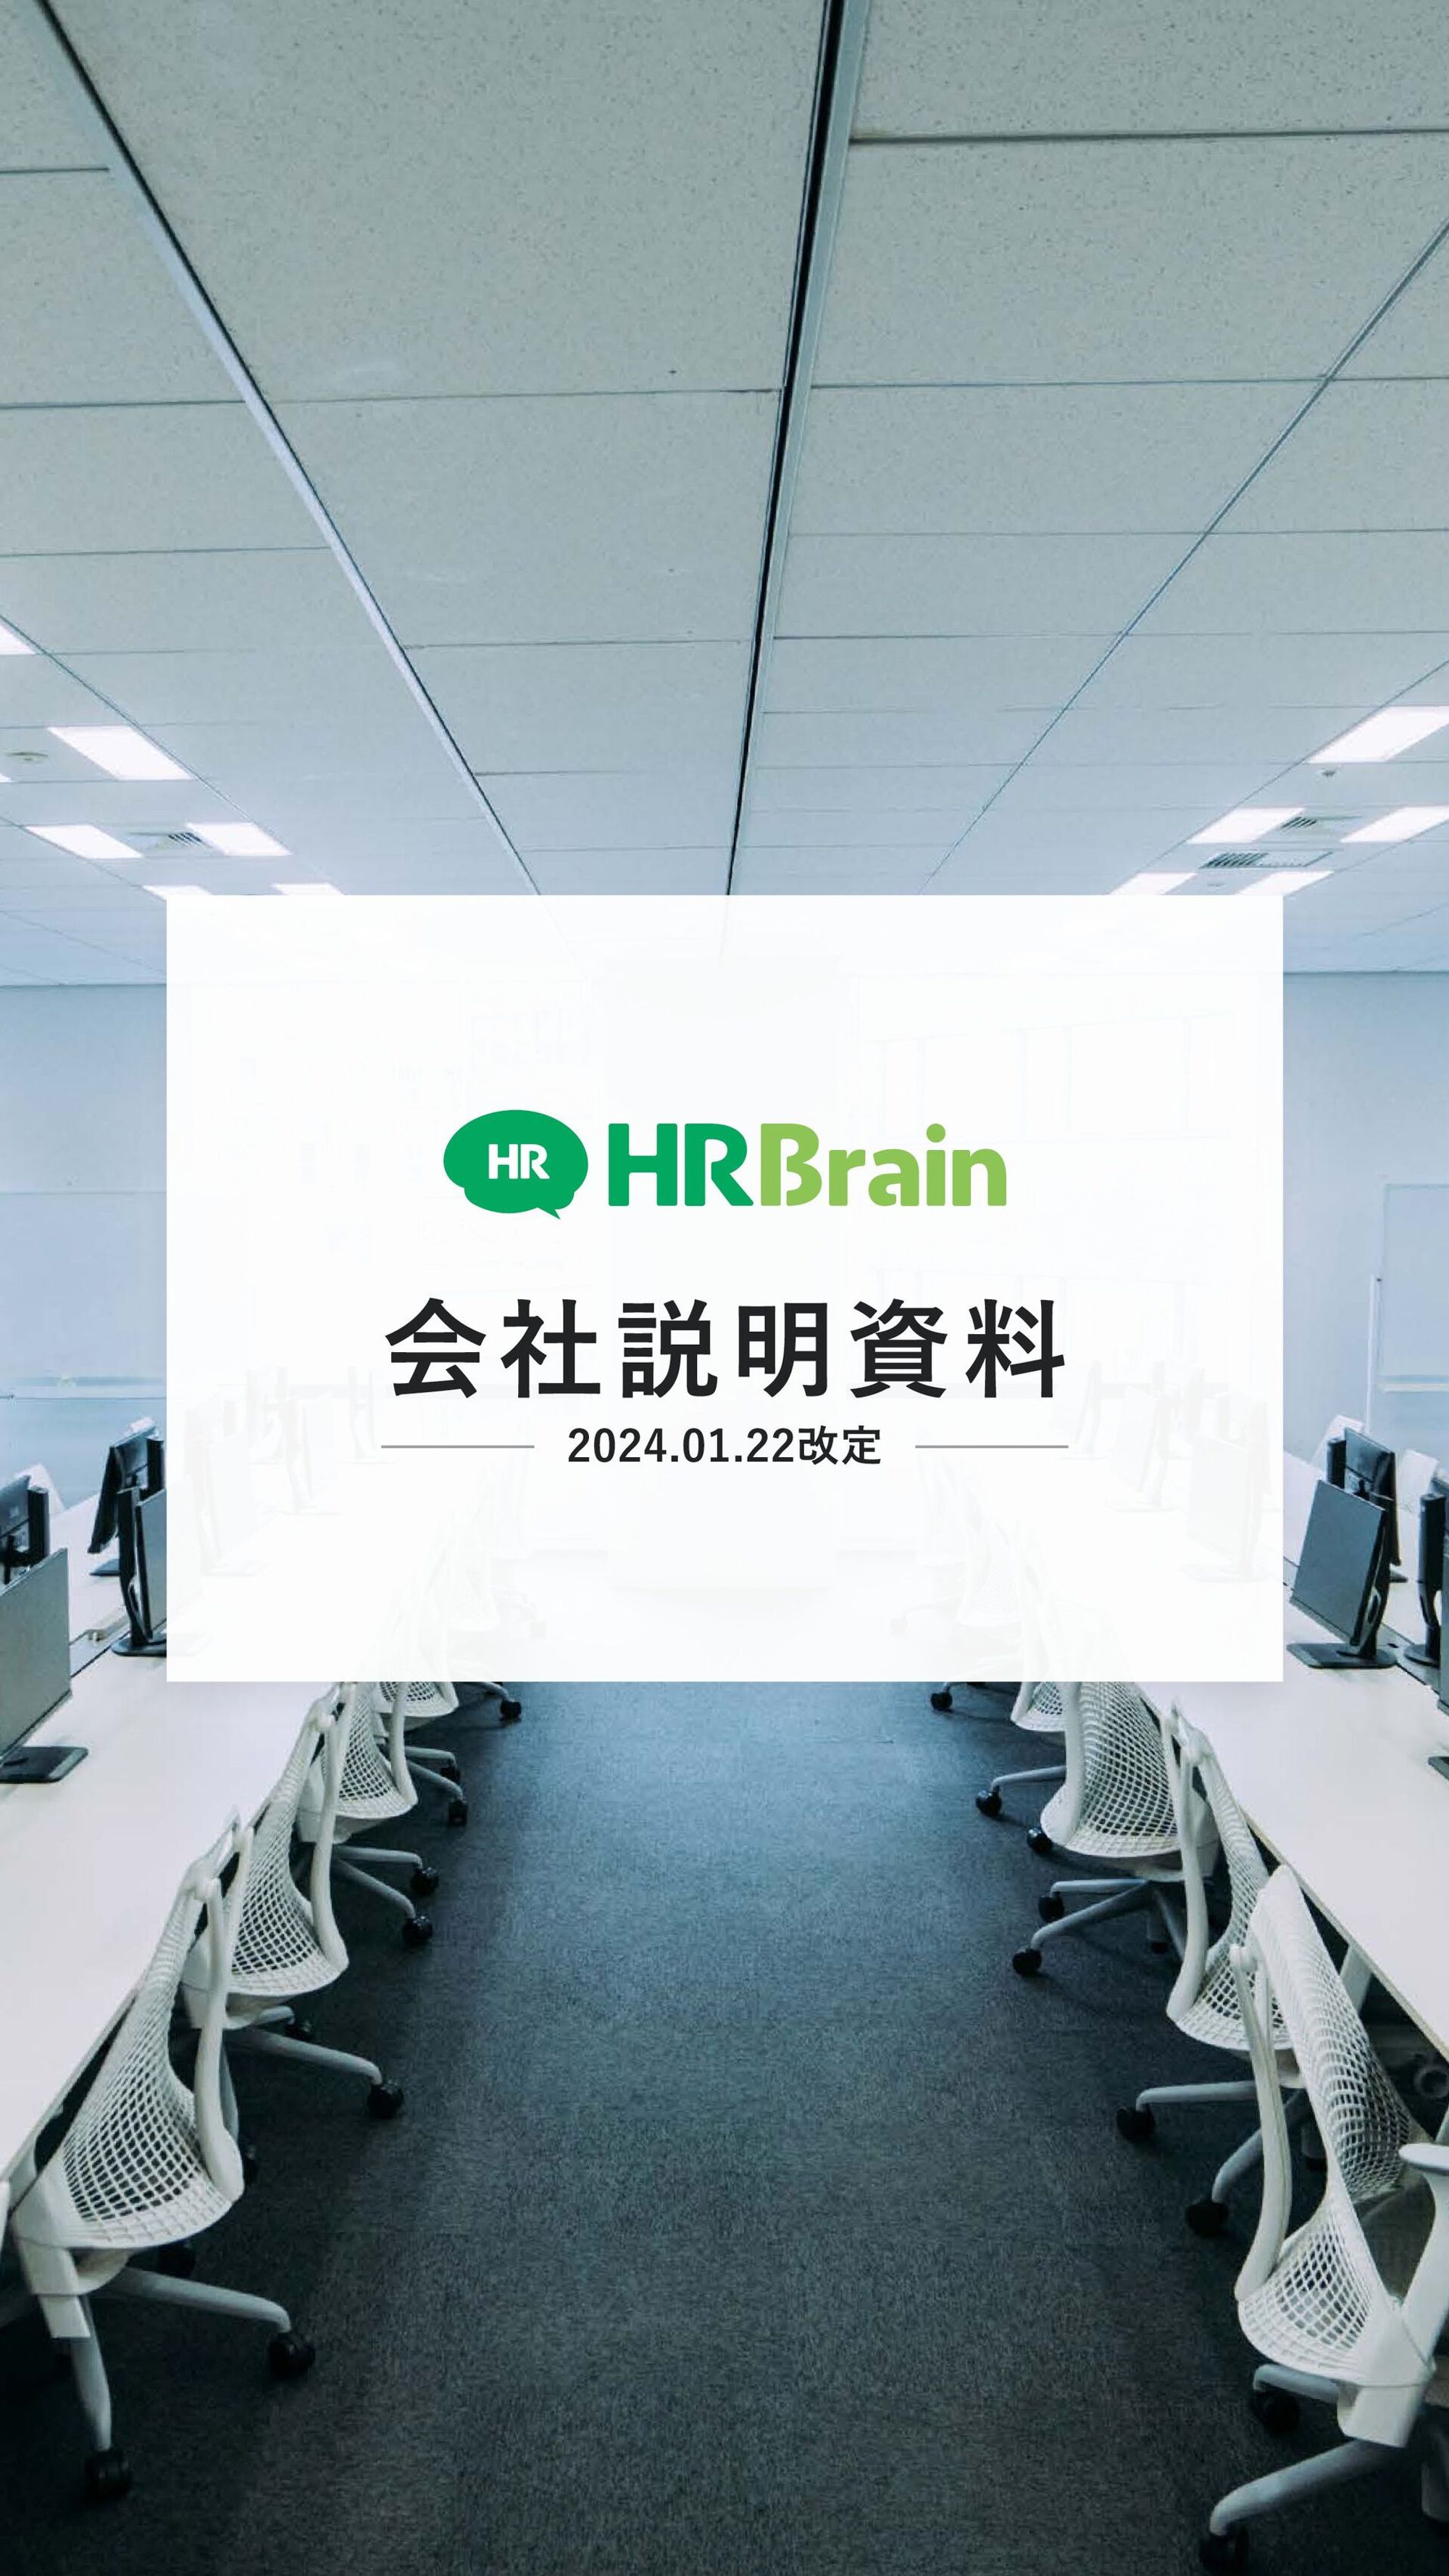 HRBrain 会社紹介 / Introduction